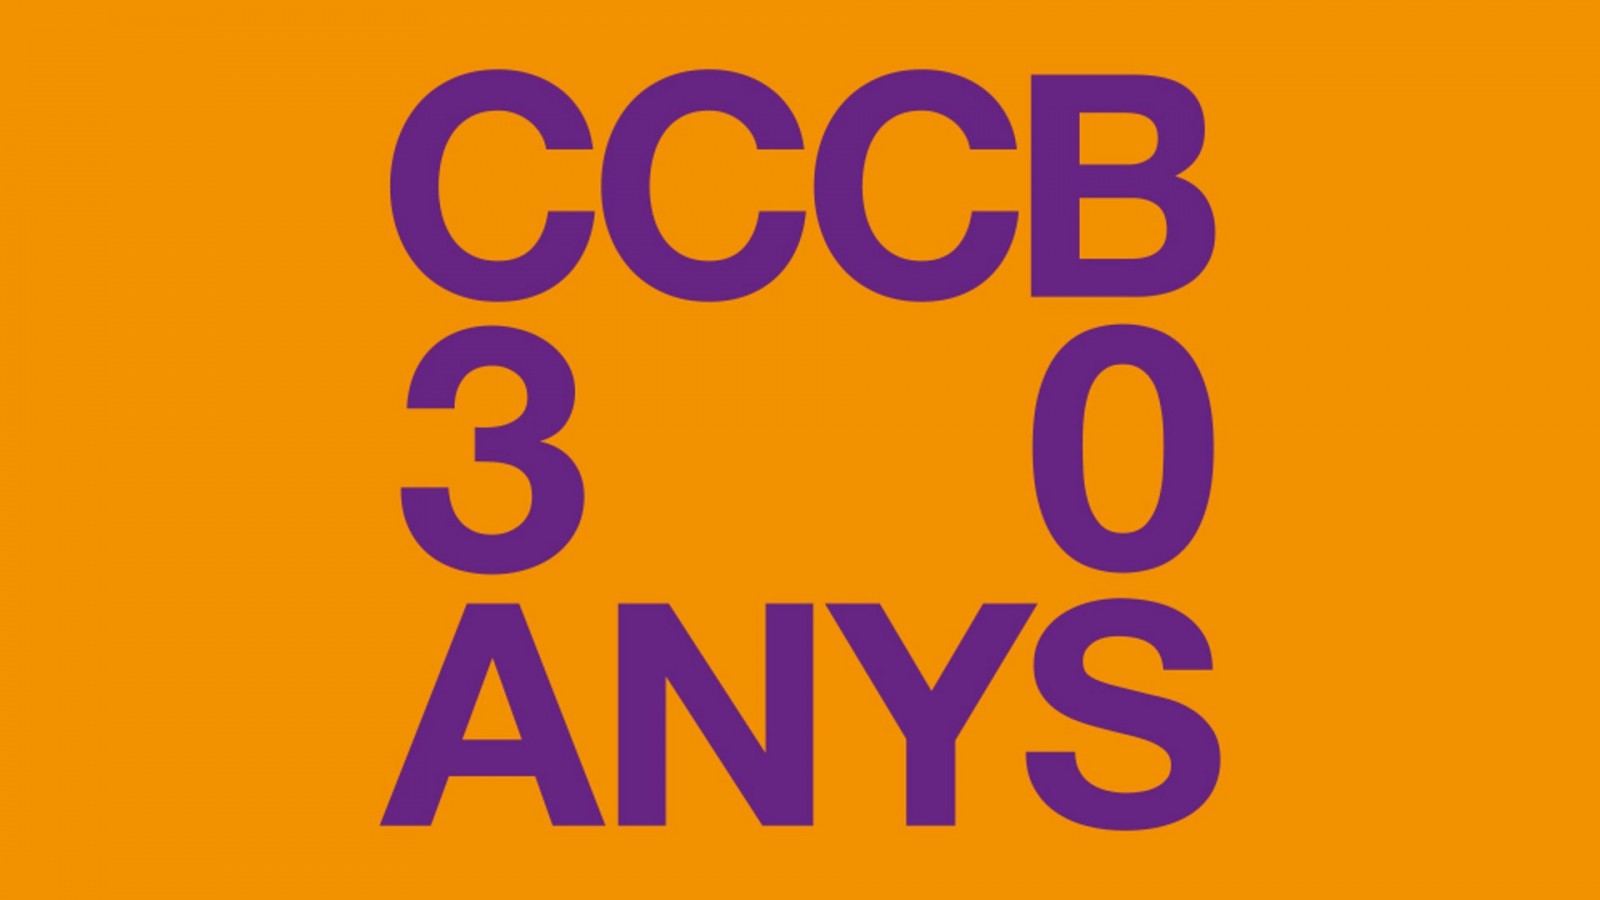 L'aniversari posa en valor el CCCB com a lloc de trobada